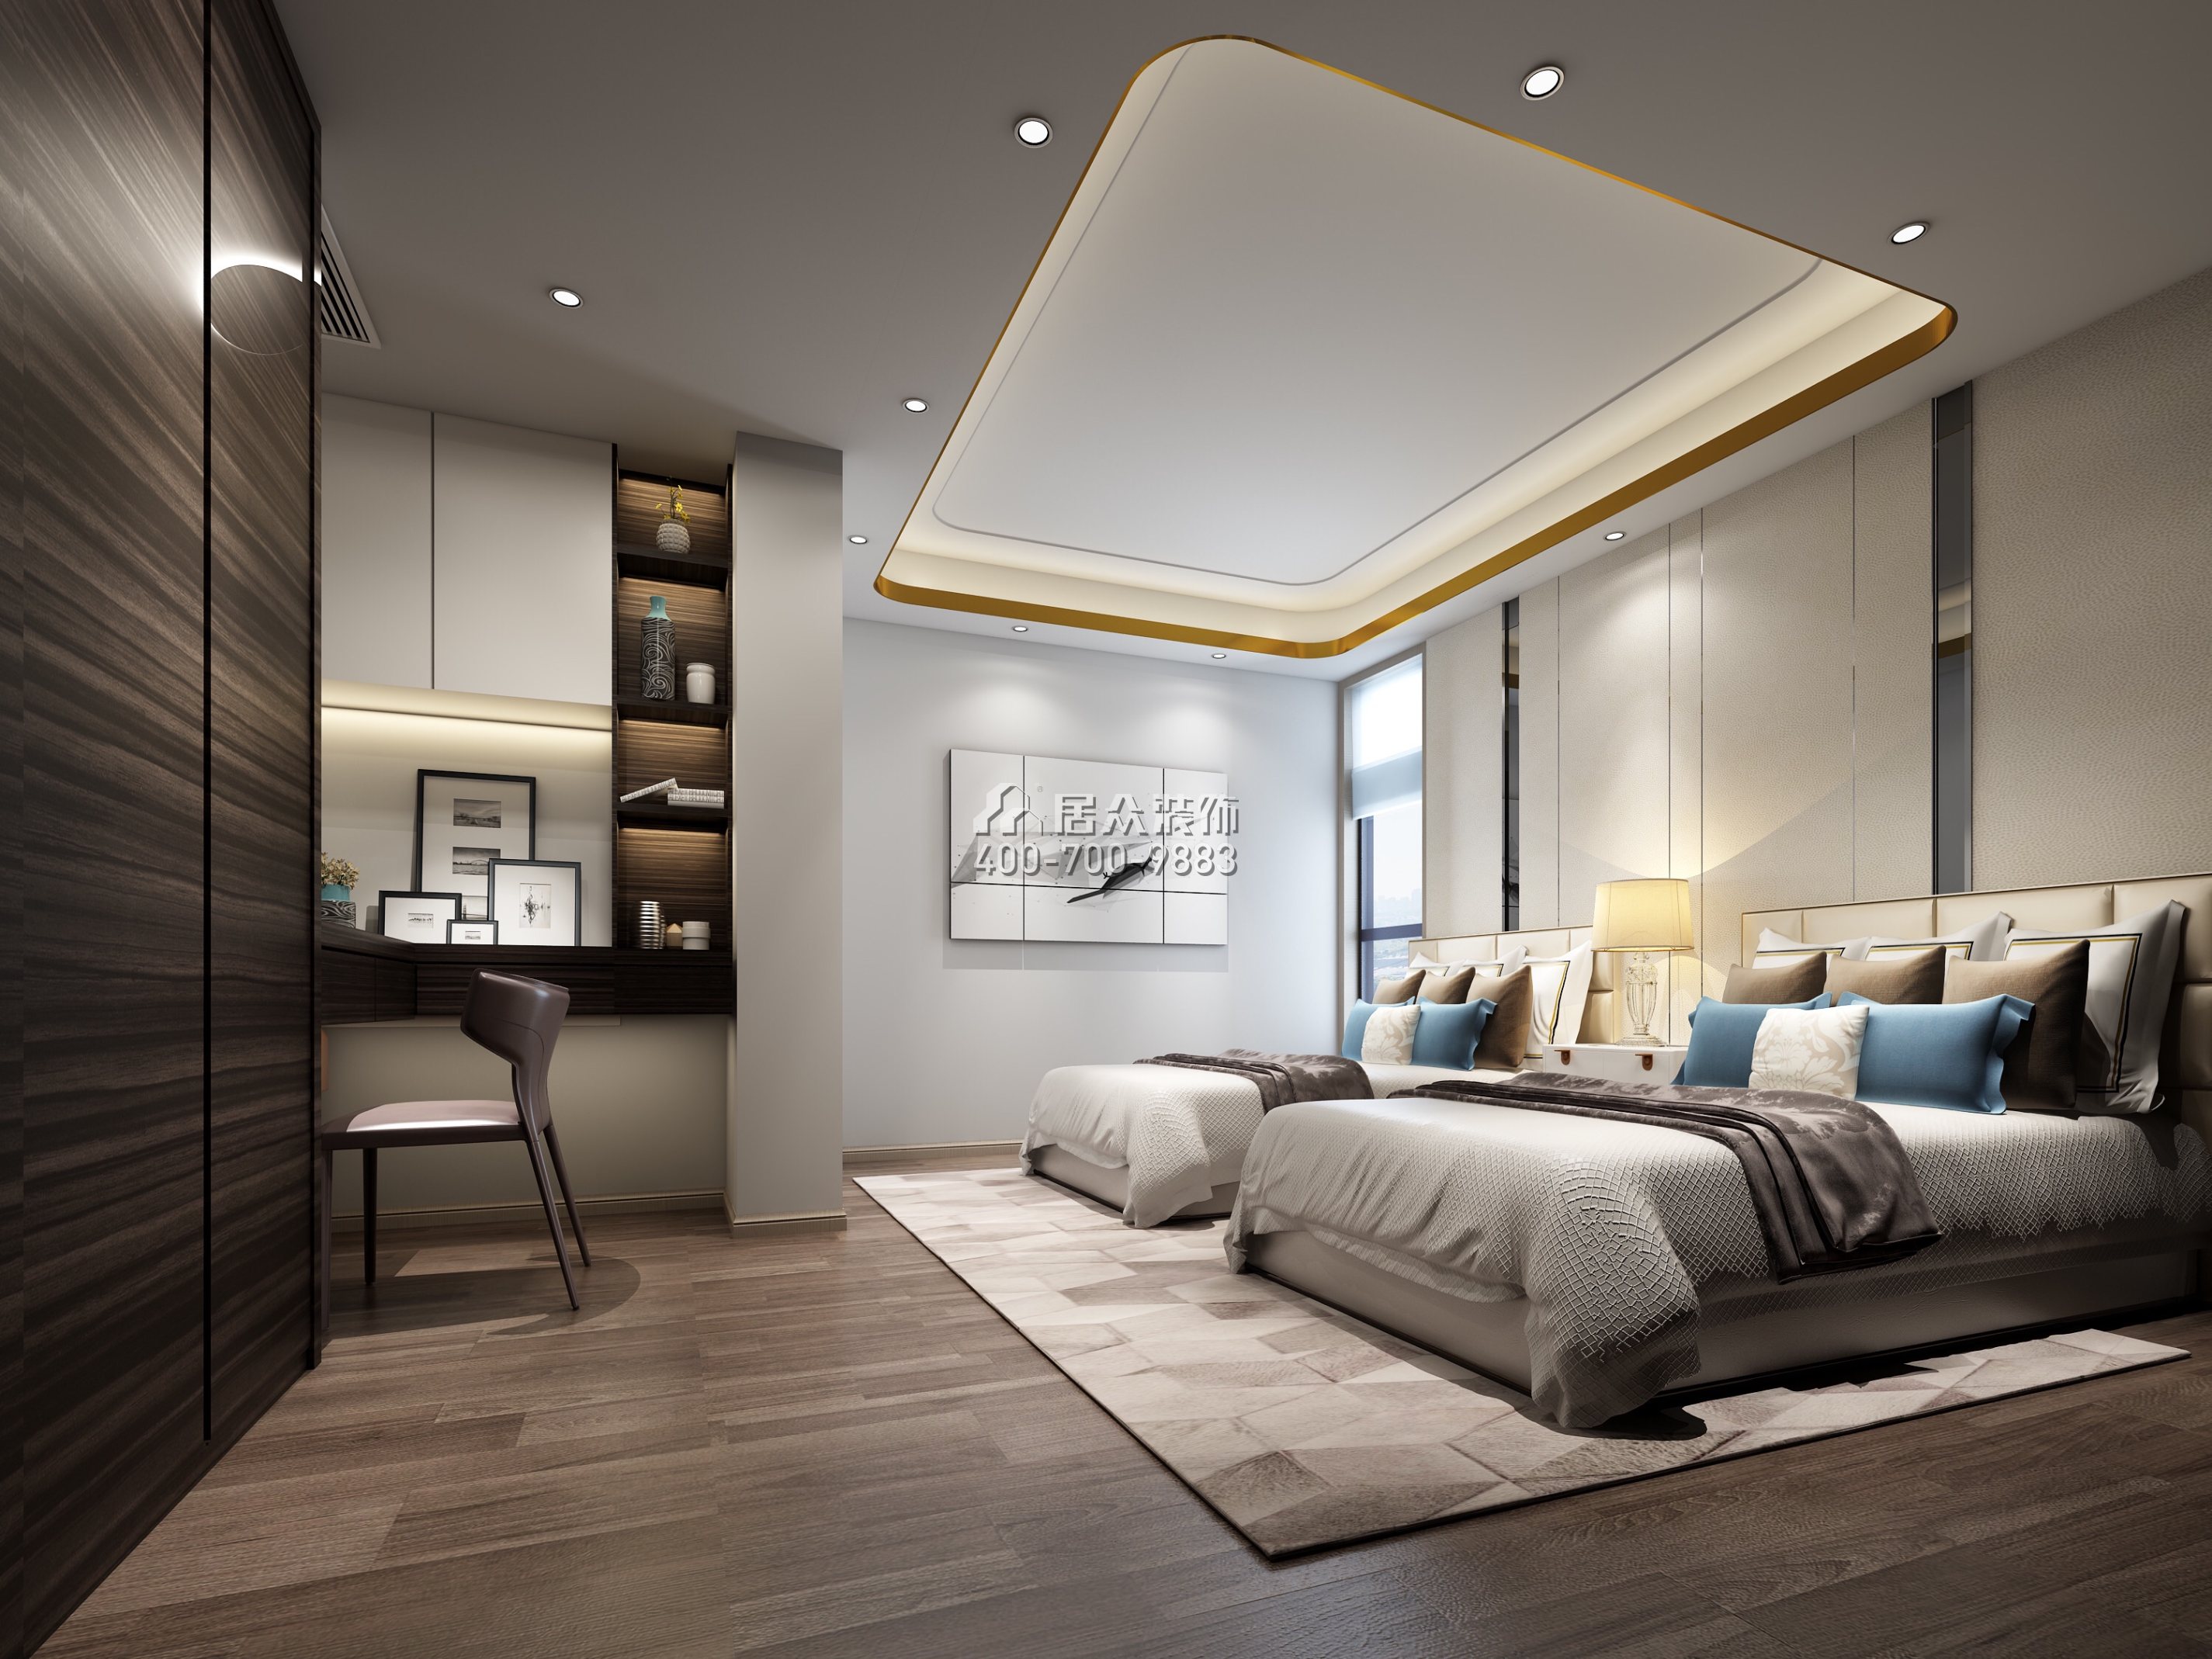 安柏麗晶180平方米現代簡約風格平層戶型臥室裝修效果圖